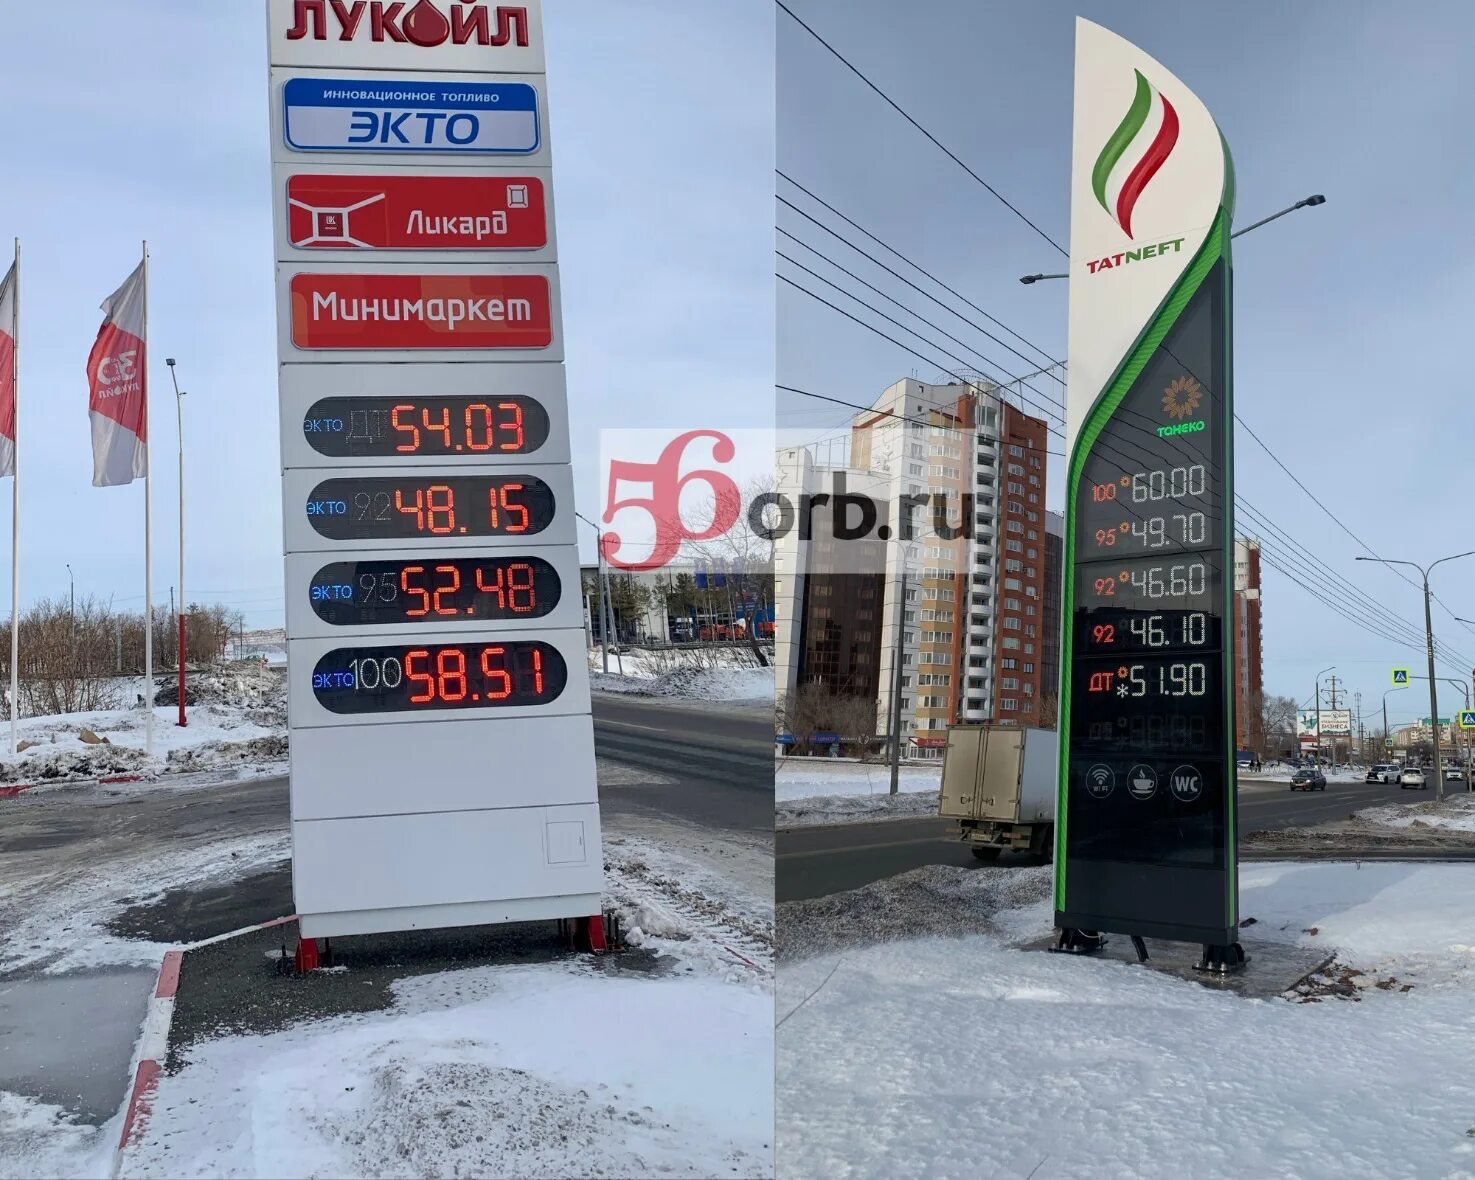 Топливо вопросы. Где самый дешевый бензин. Самая дешевая заправка в России. Самый дорогой марка бензина. Почём сейчас бензин в Оренбурге.